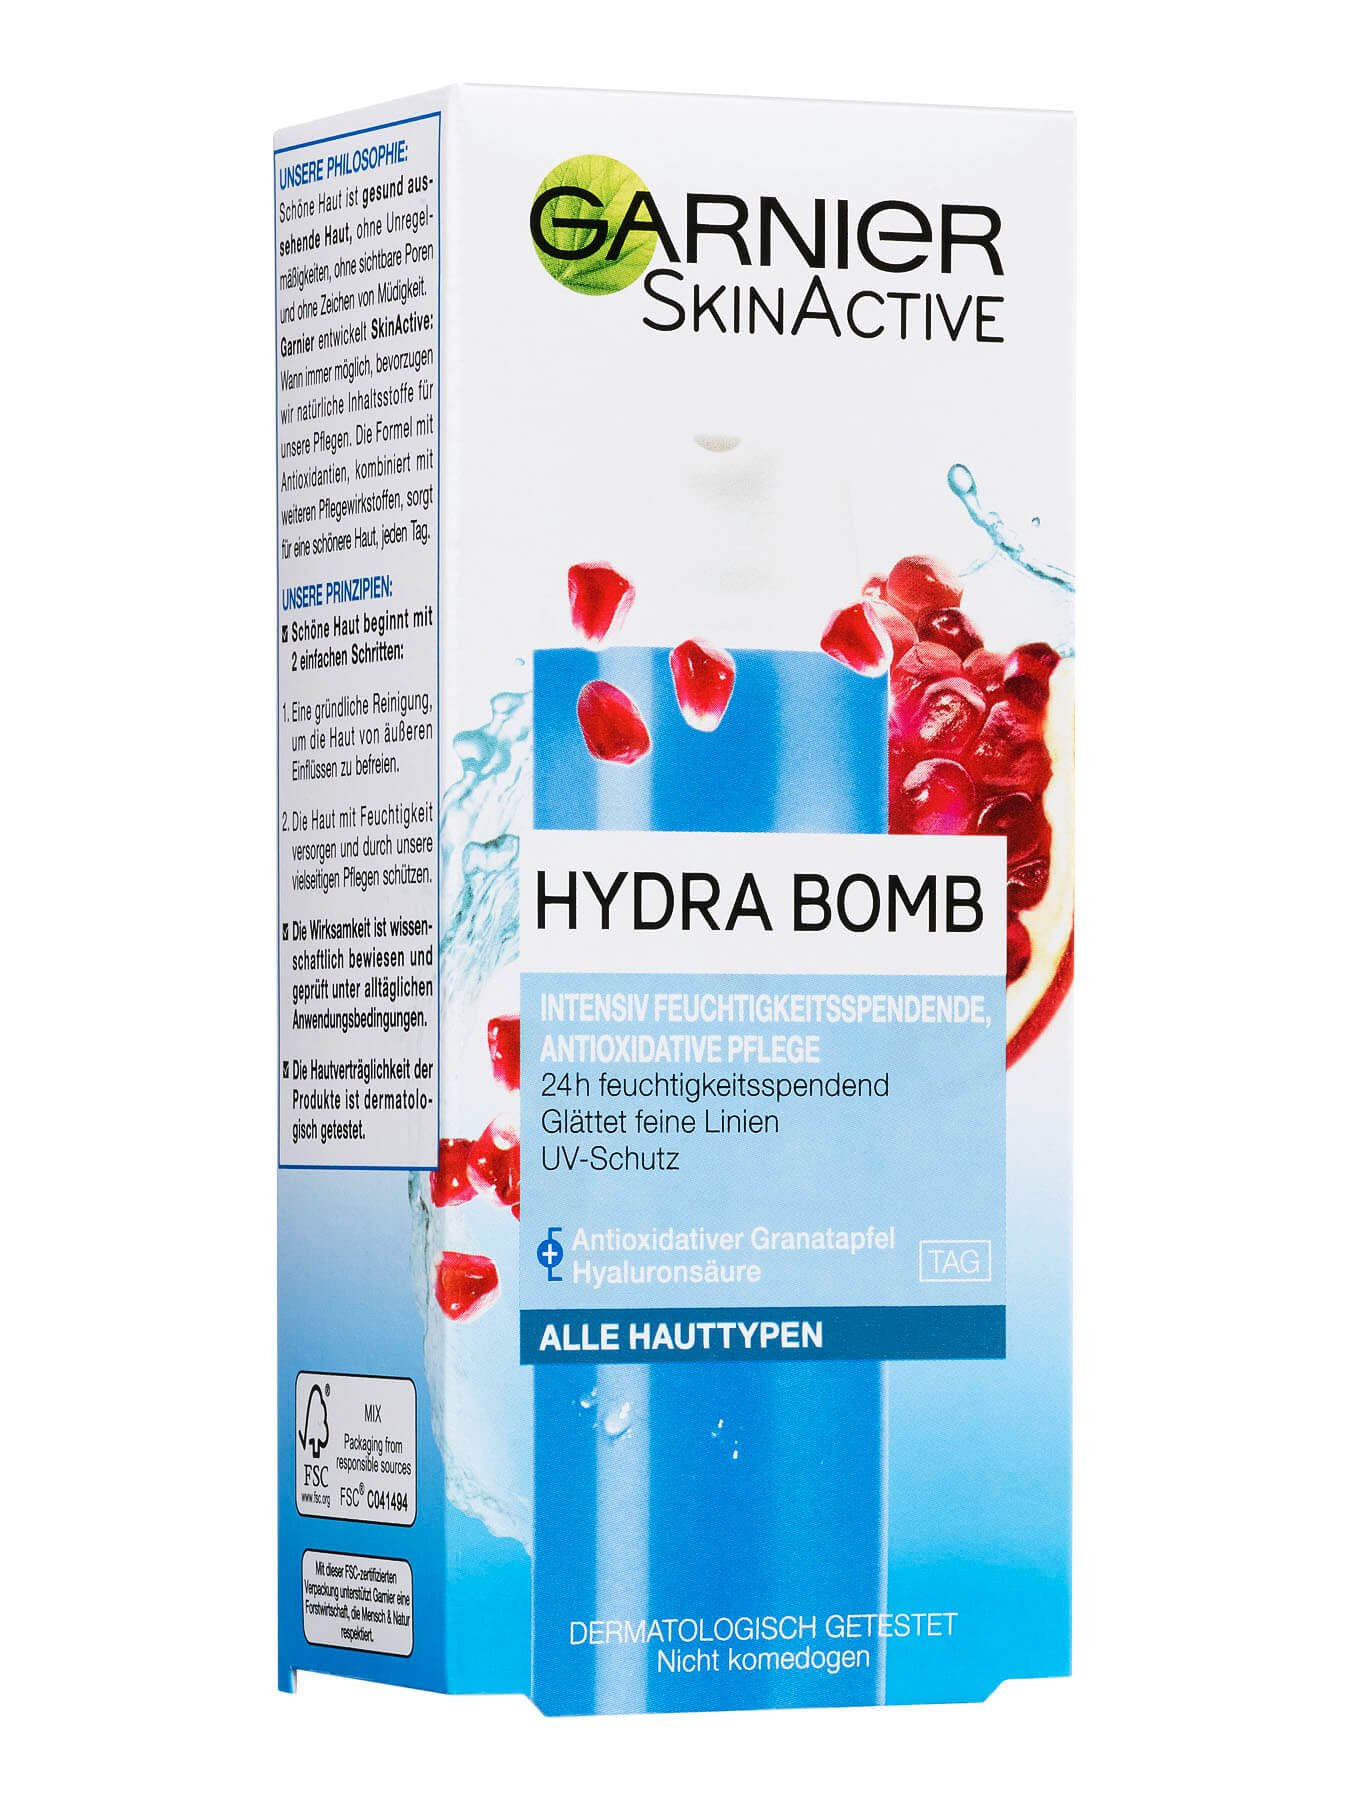 Hydra Bomb Feuchtigkeitsspendende Antioxidative Wasser Creme Packung front Garnier Deutschland gr